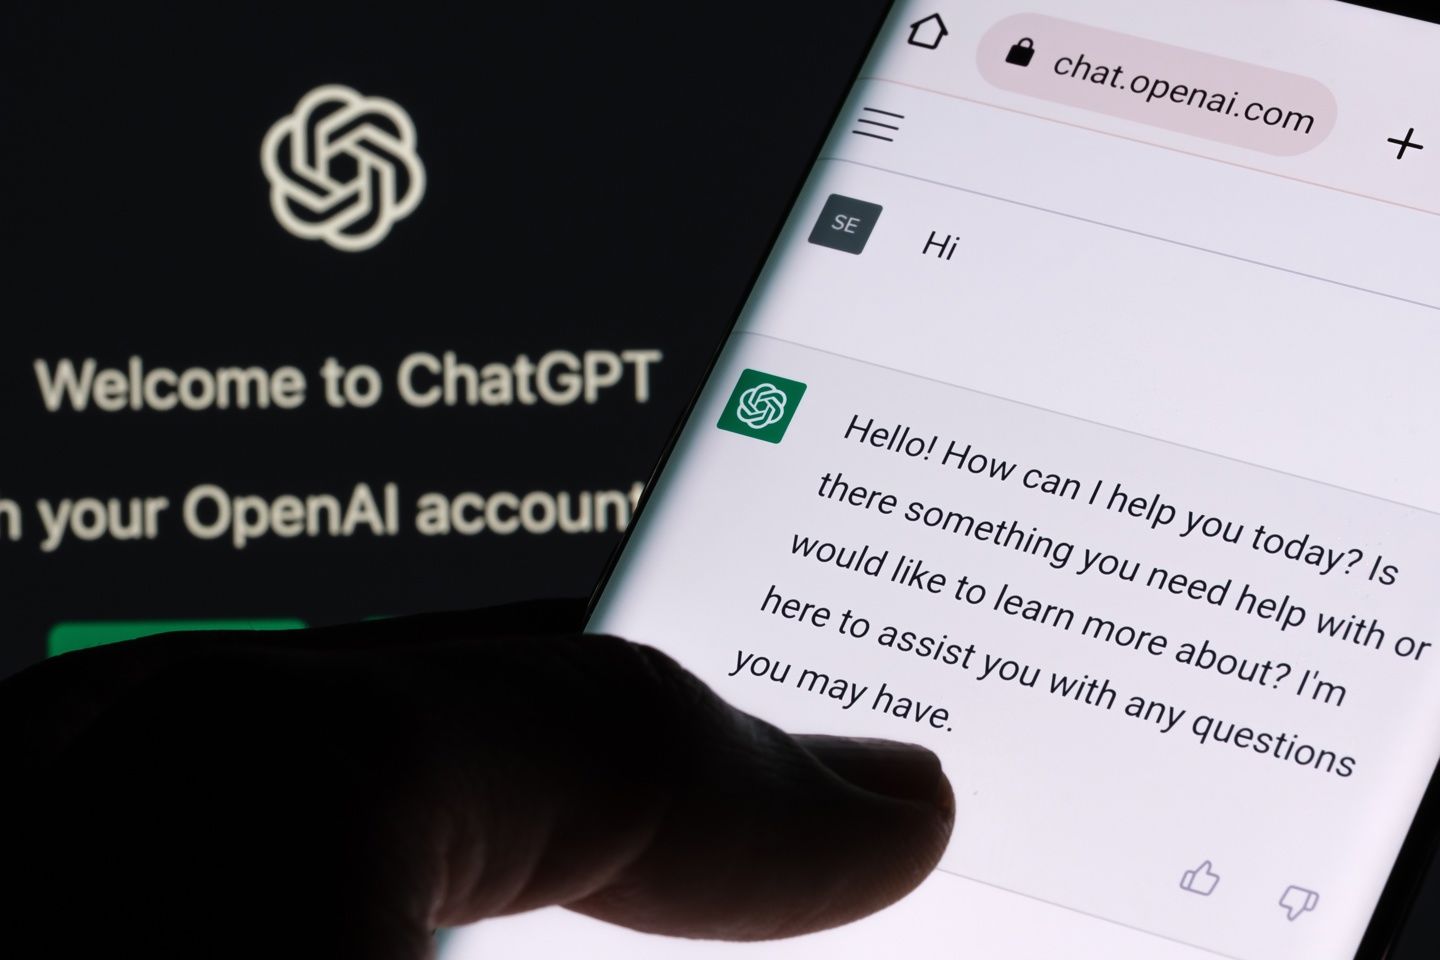 涉嫌侵犯隐私，加拿大对 ChatGPT 展开调查